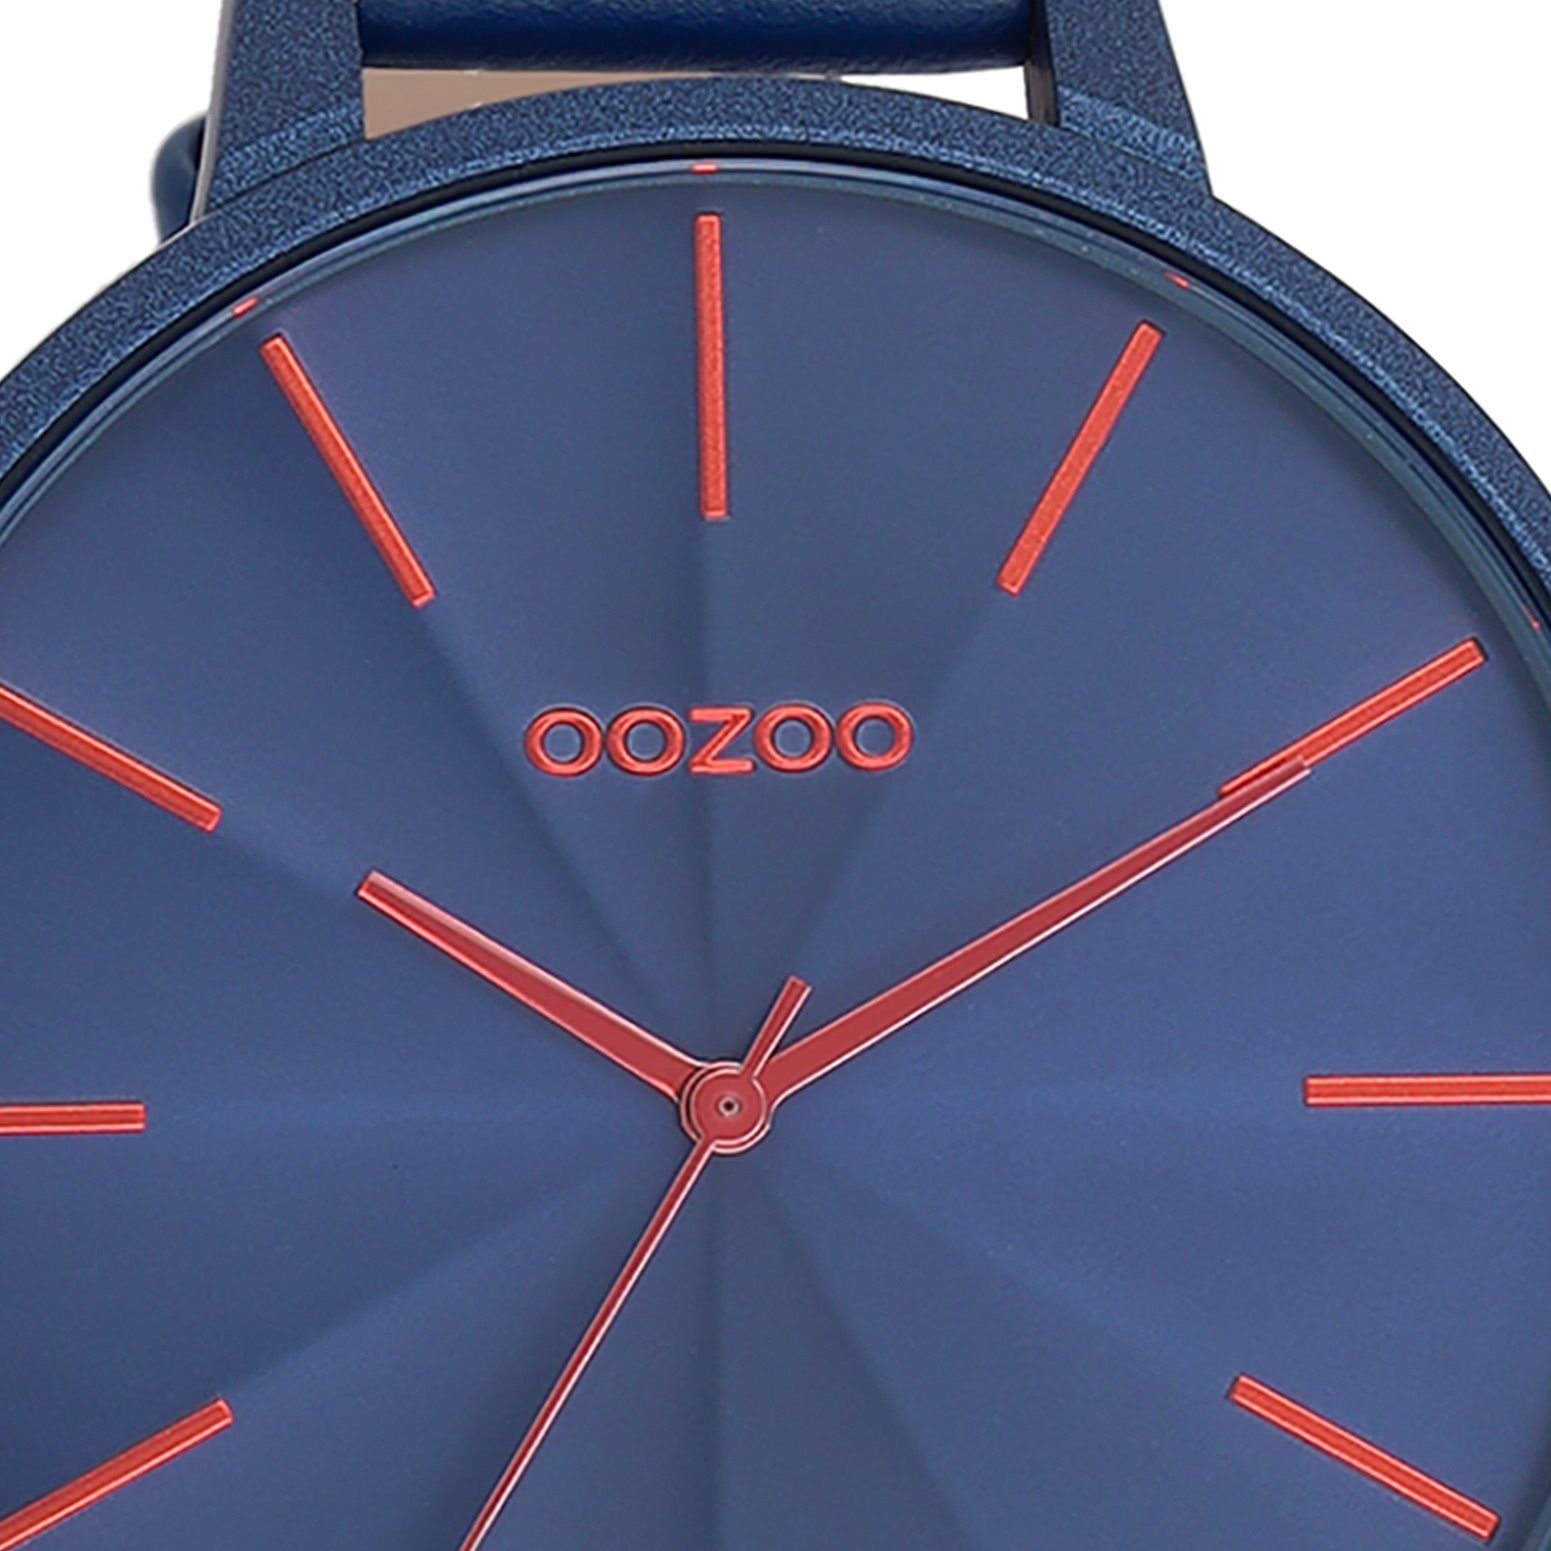 Oozoo (ca. groß Quarzuhr Japanisches Laufwerk Lederarmband, OOZOO Damenuhr Fashion-Style, Damen Armbanduhr Analog, extra 48mm) Timepieces rund,